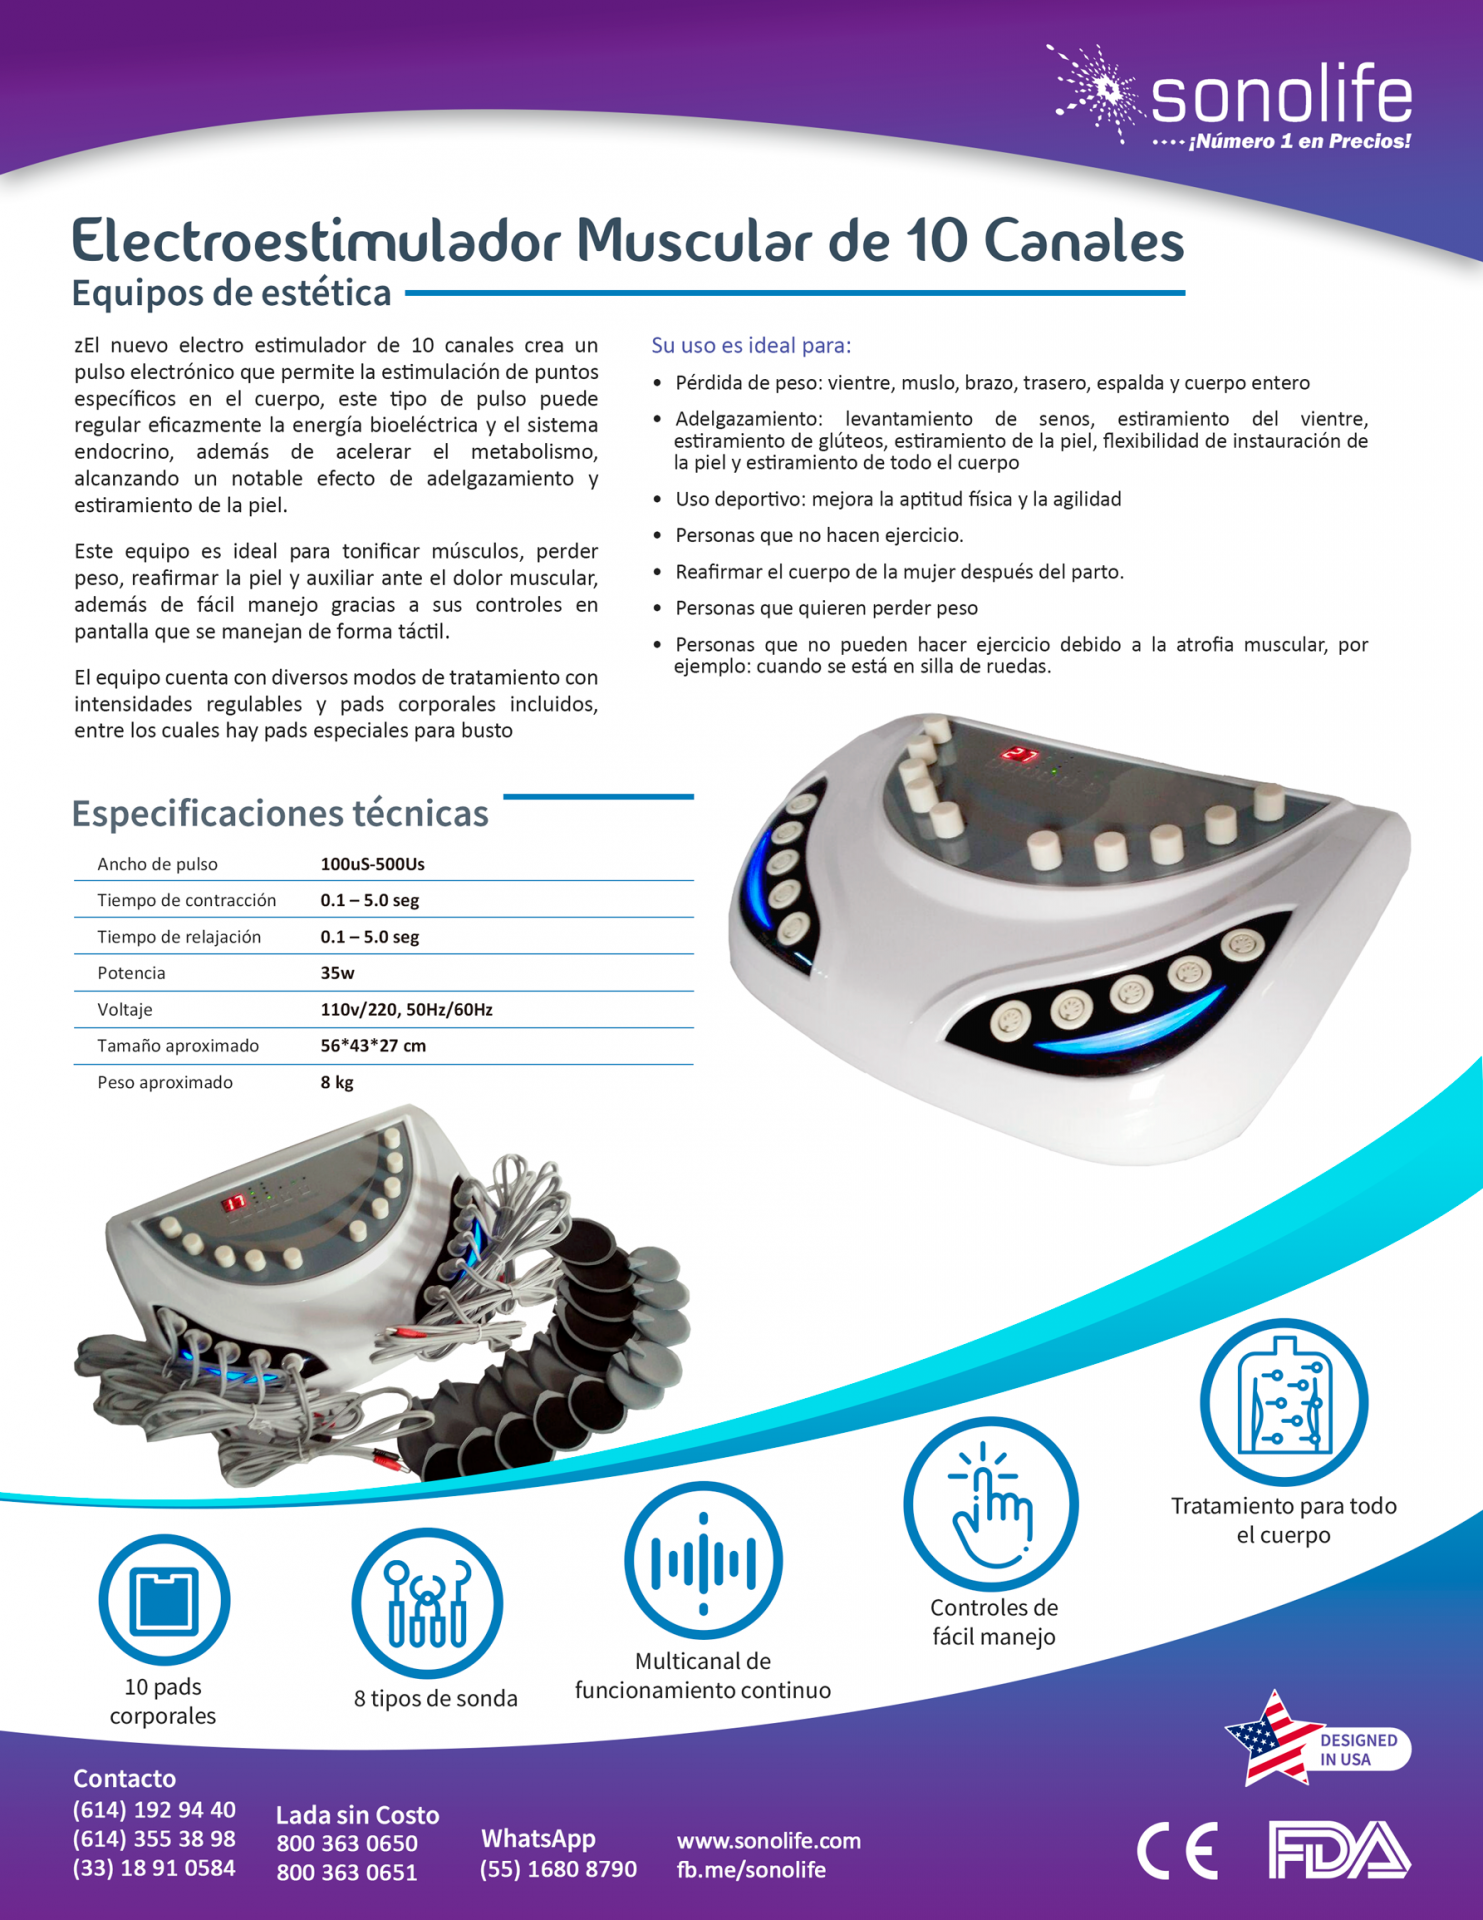 Elementos esenciales de un electroestimulador y de su aplicación